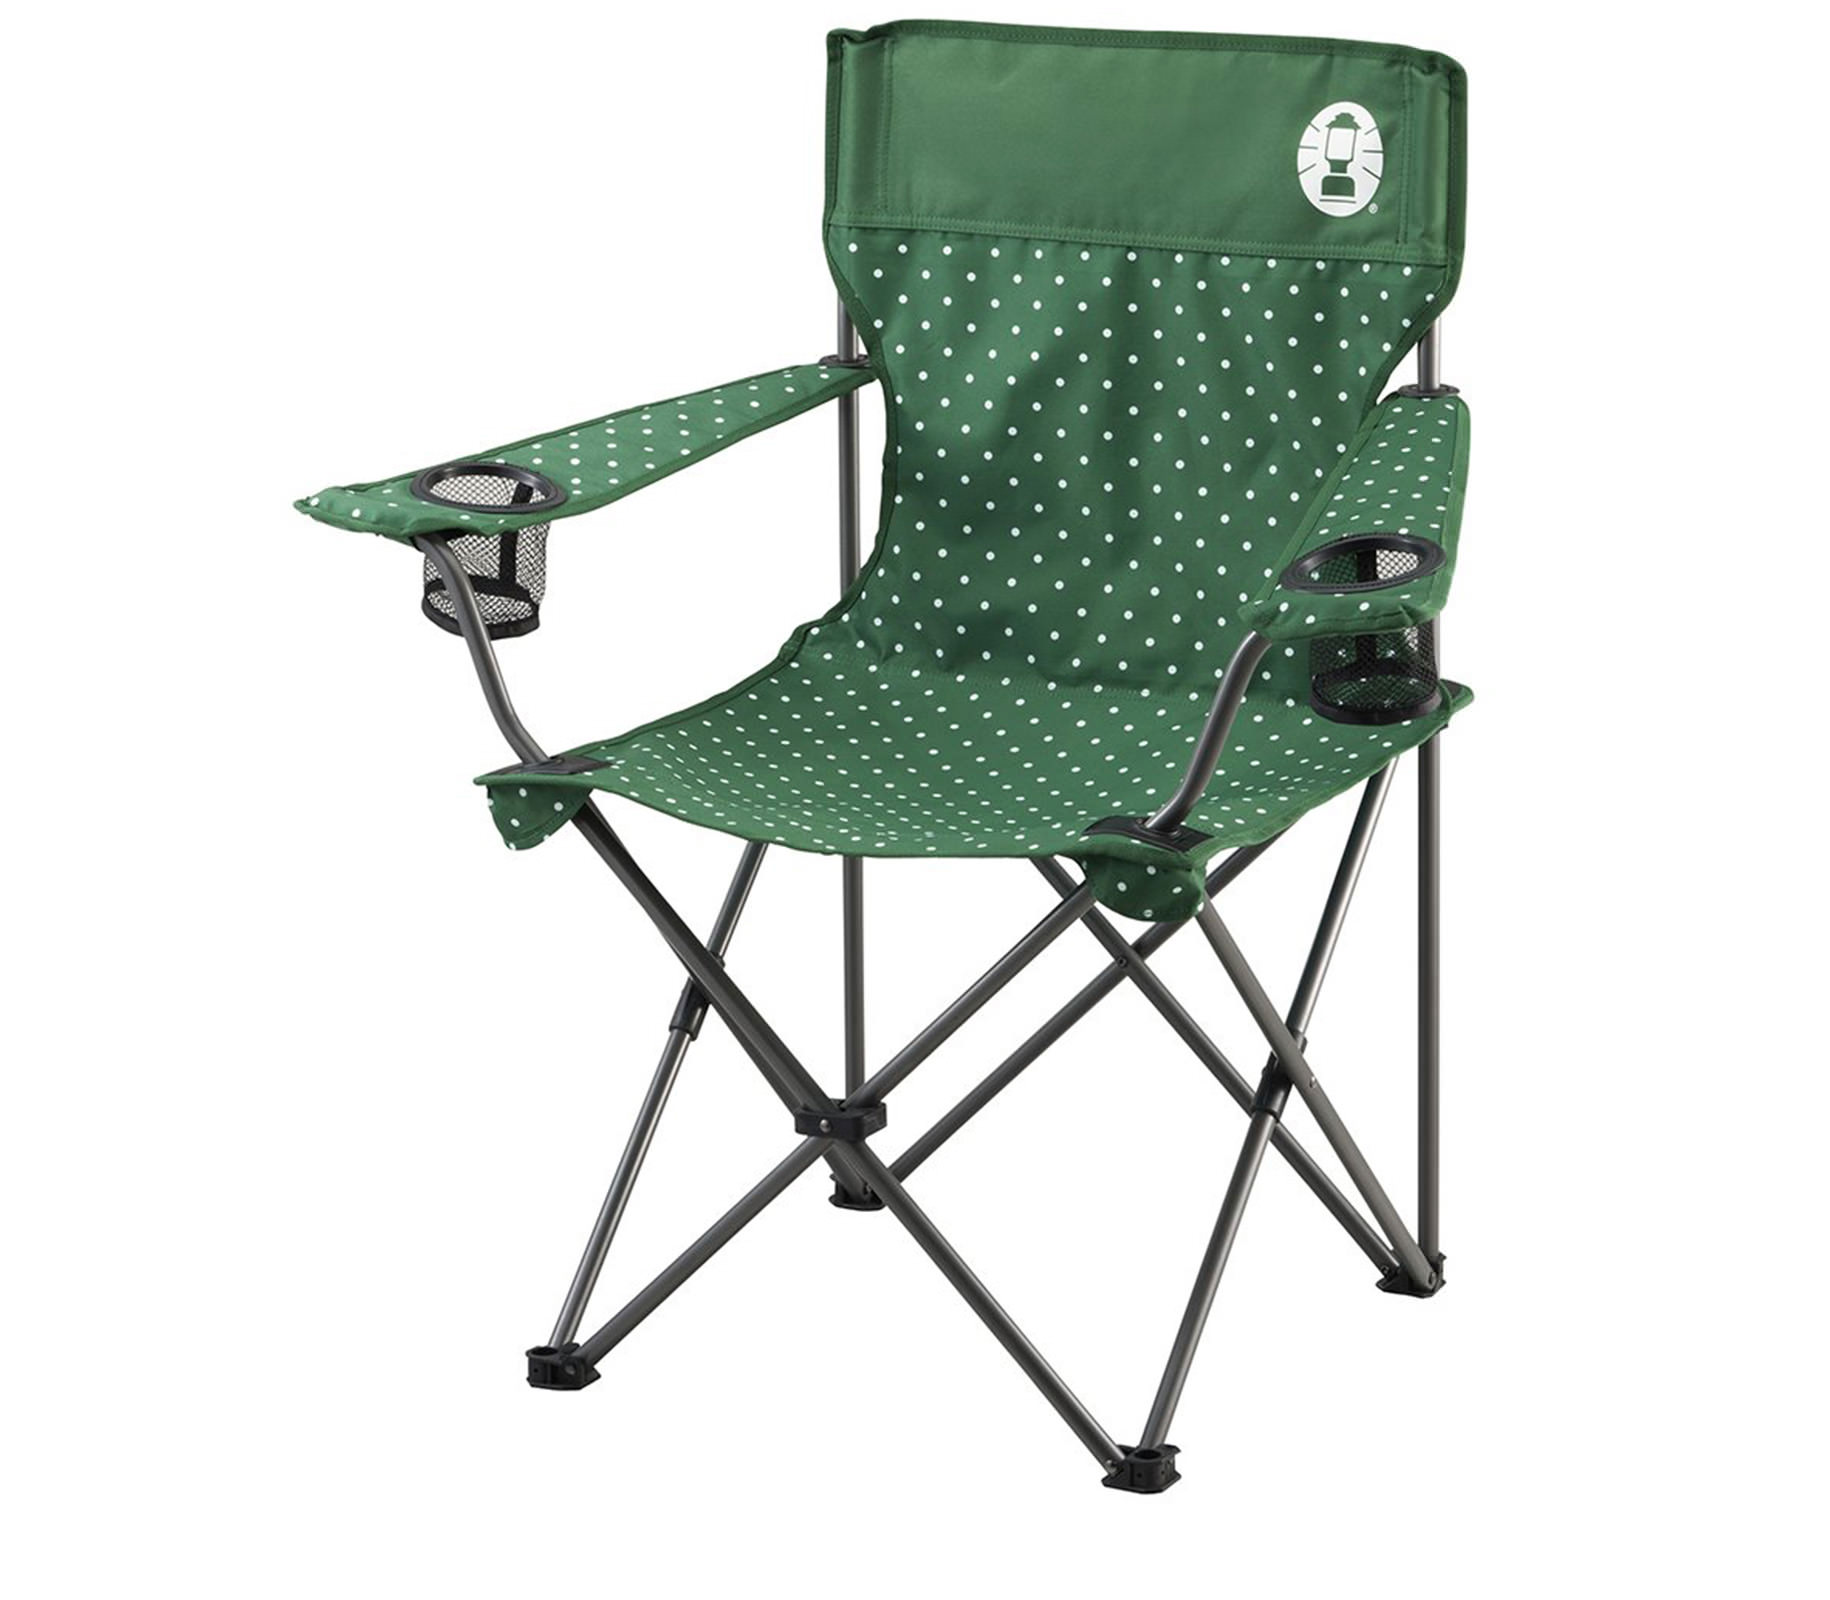 ghe-xep-coleman-resort-chair-green-dot-2000016996-7589-wetrek_vn